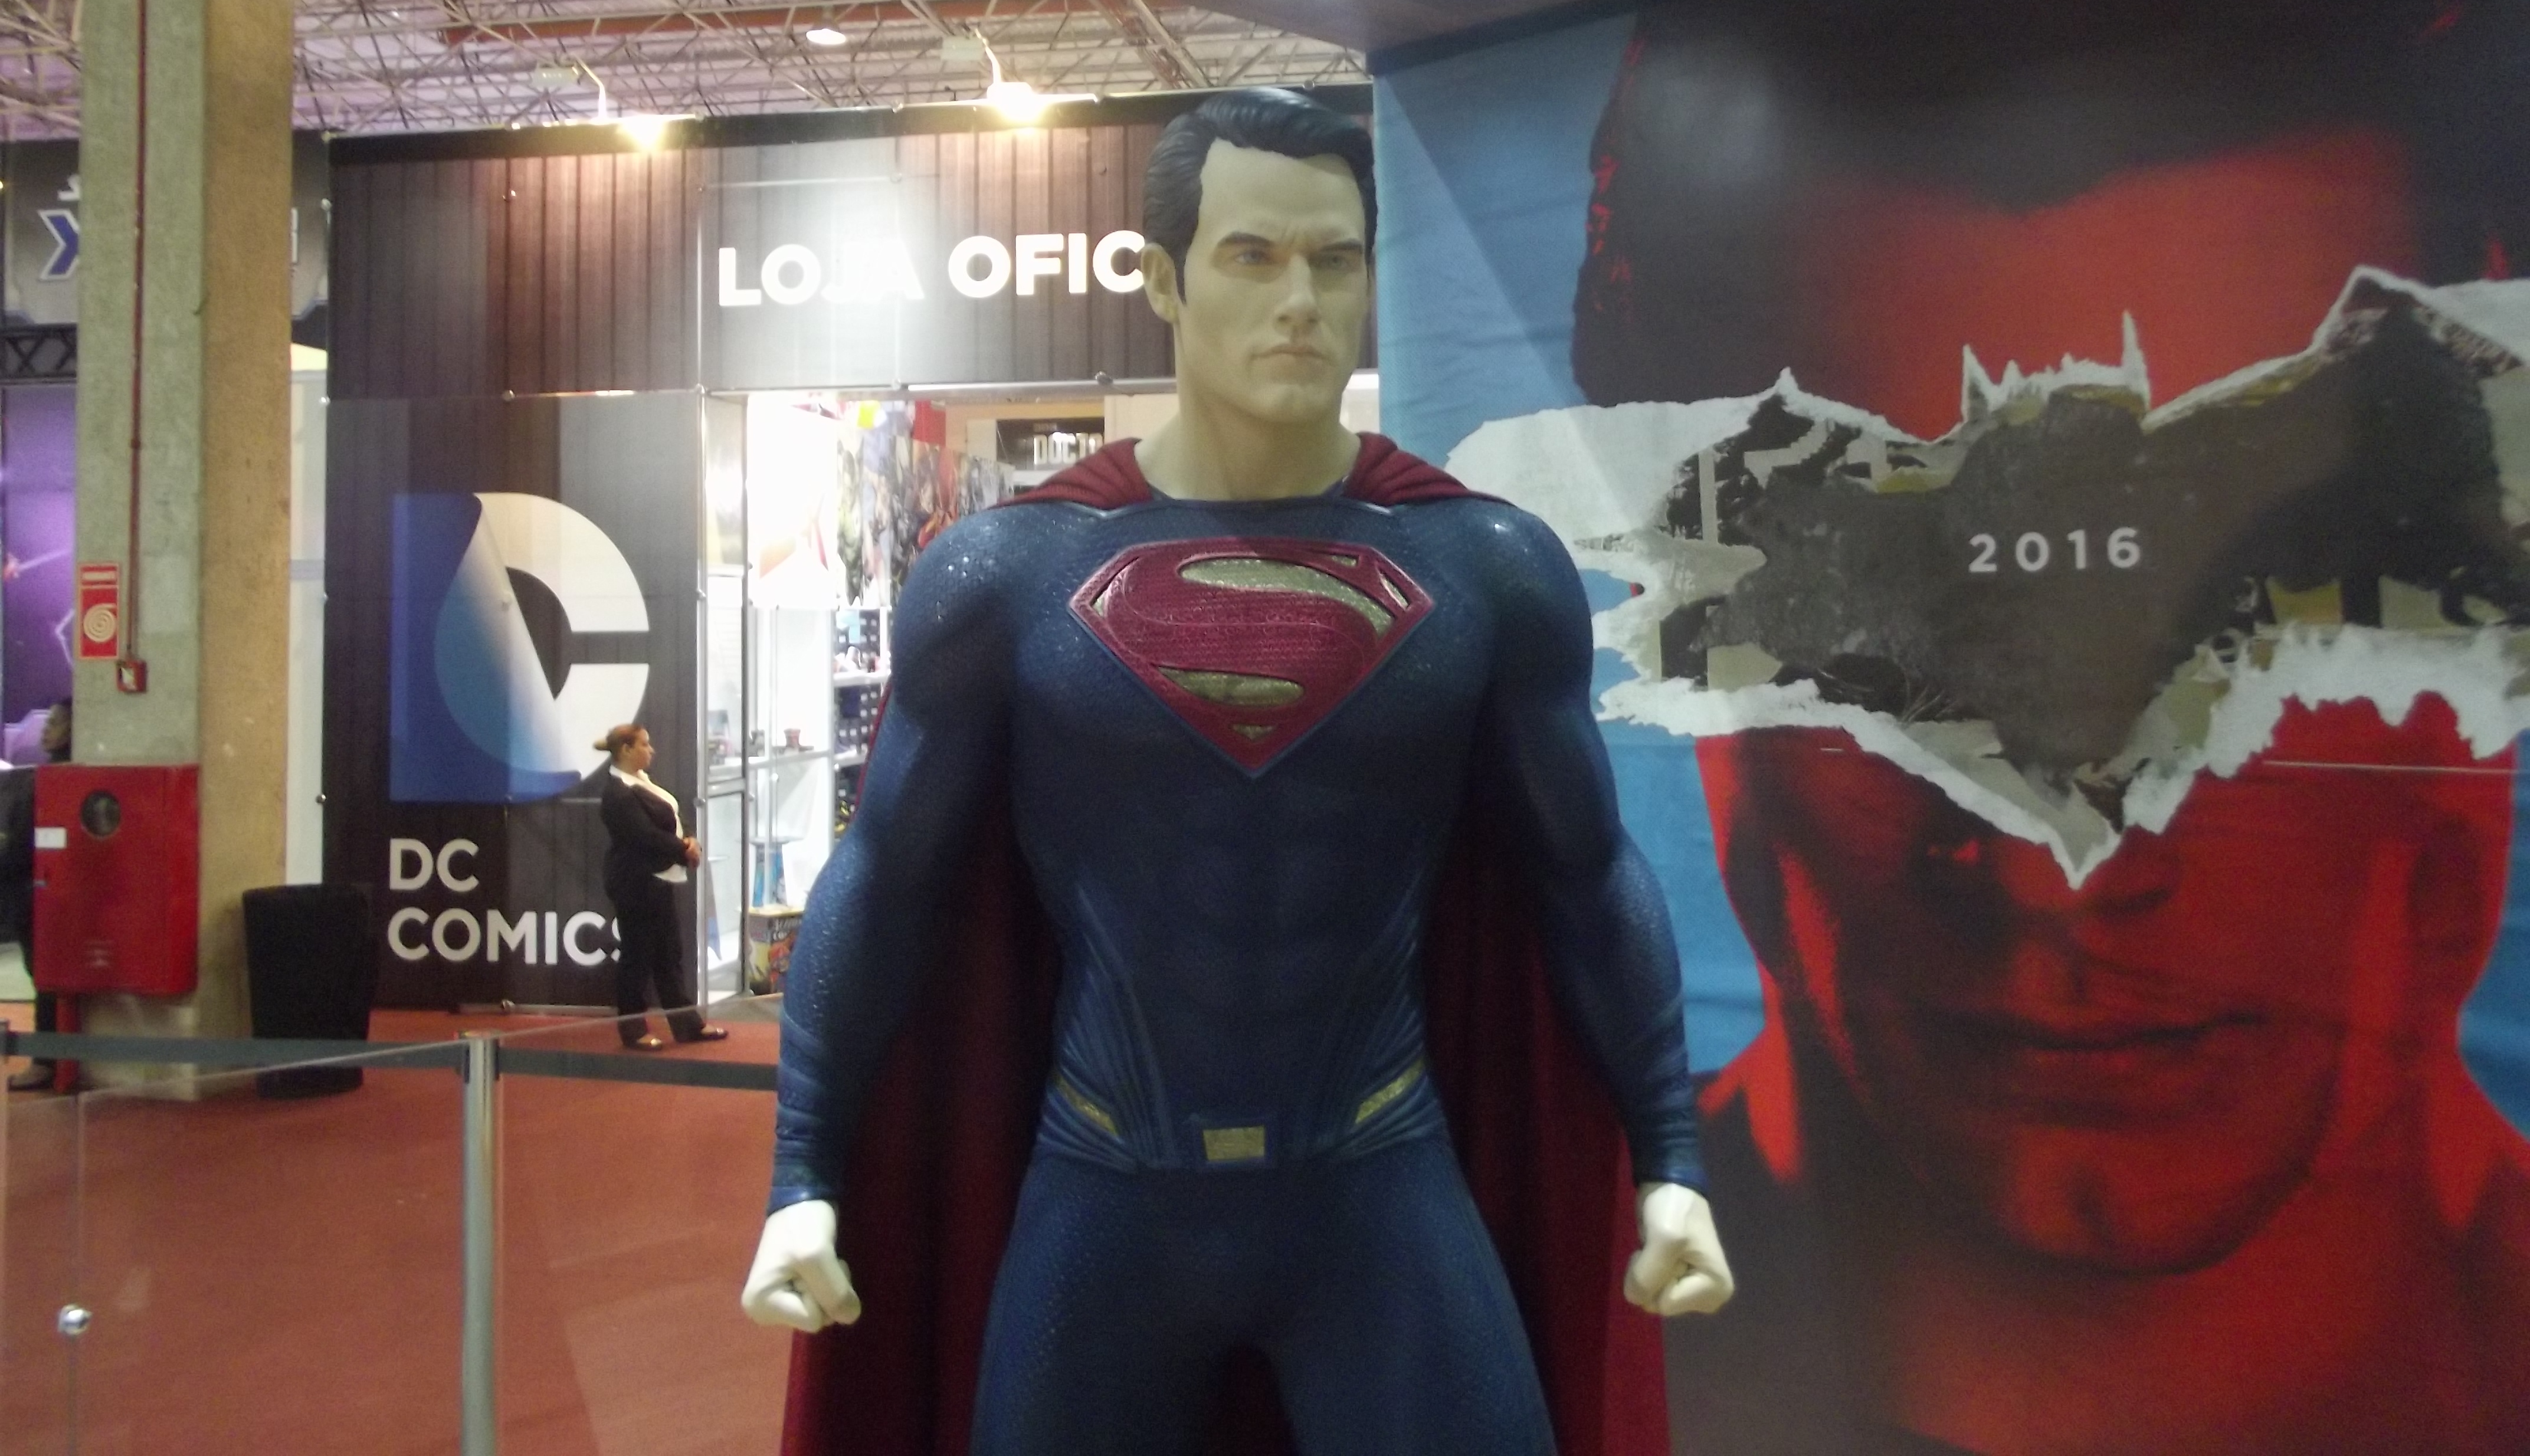 O traje reluzente do Superman irá contrastar com a fantasia surrada do Batman. (Foto: Henrique Almeida)